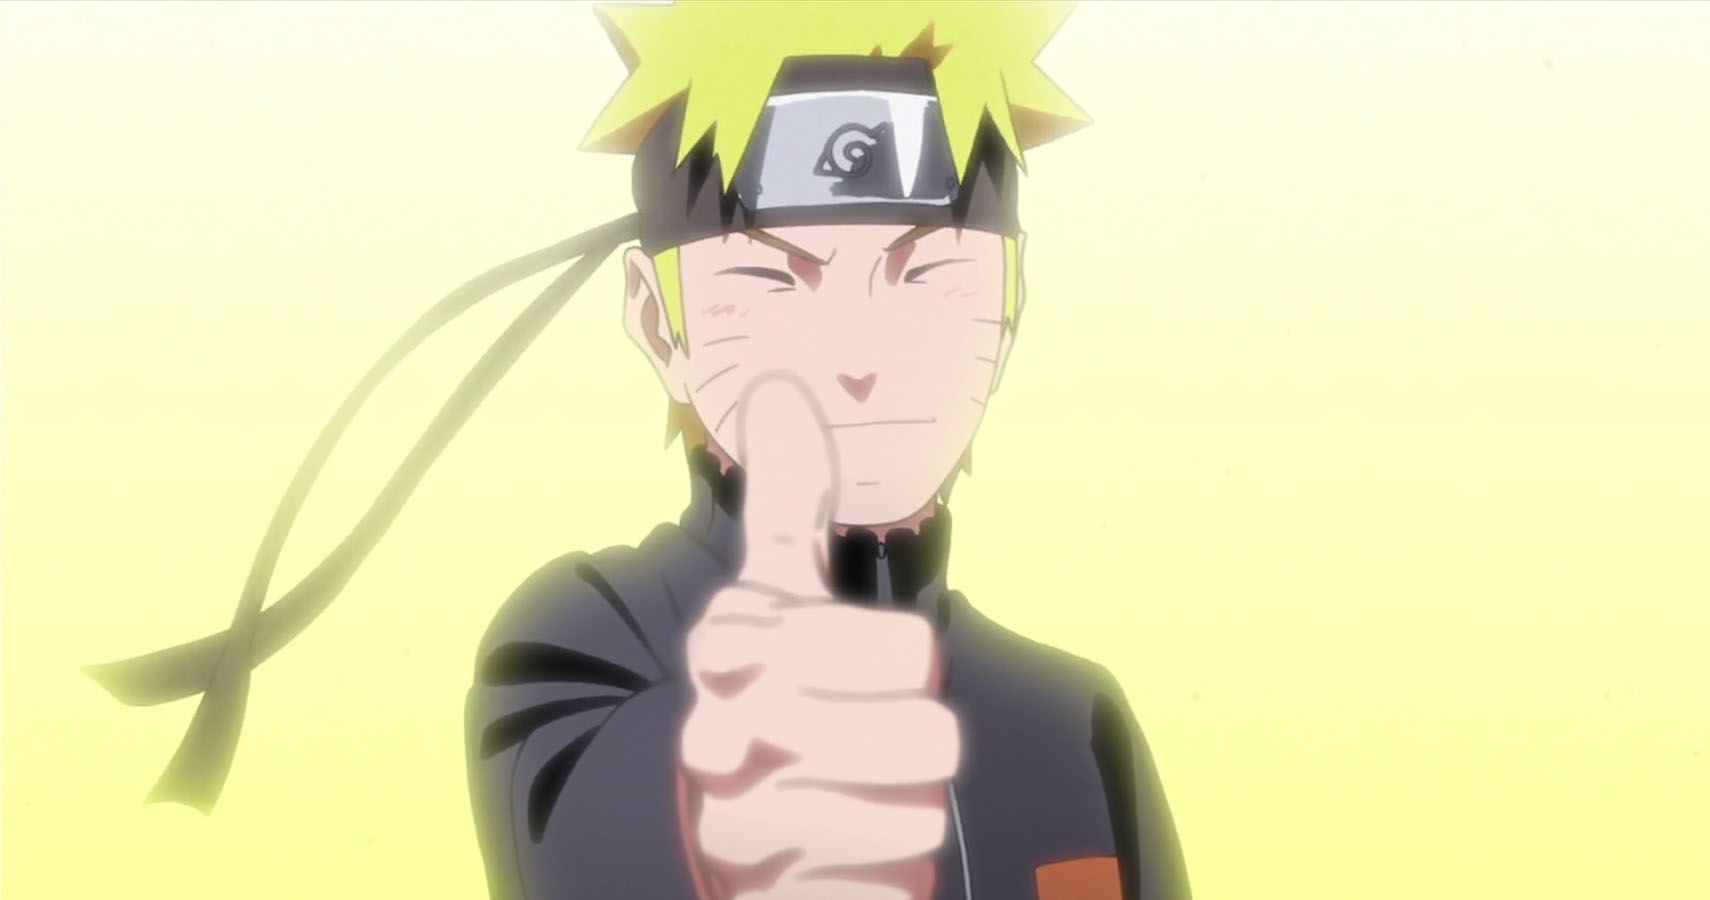 20 Best Naruto Episodes Ranked - IMDb